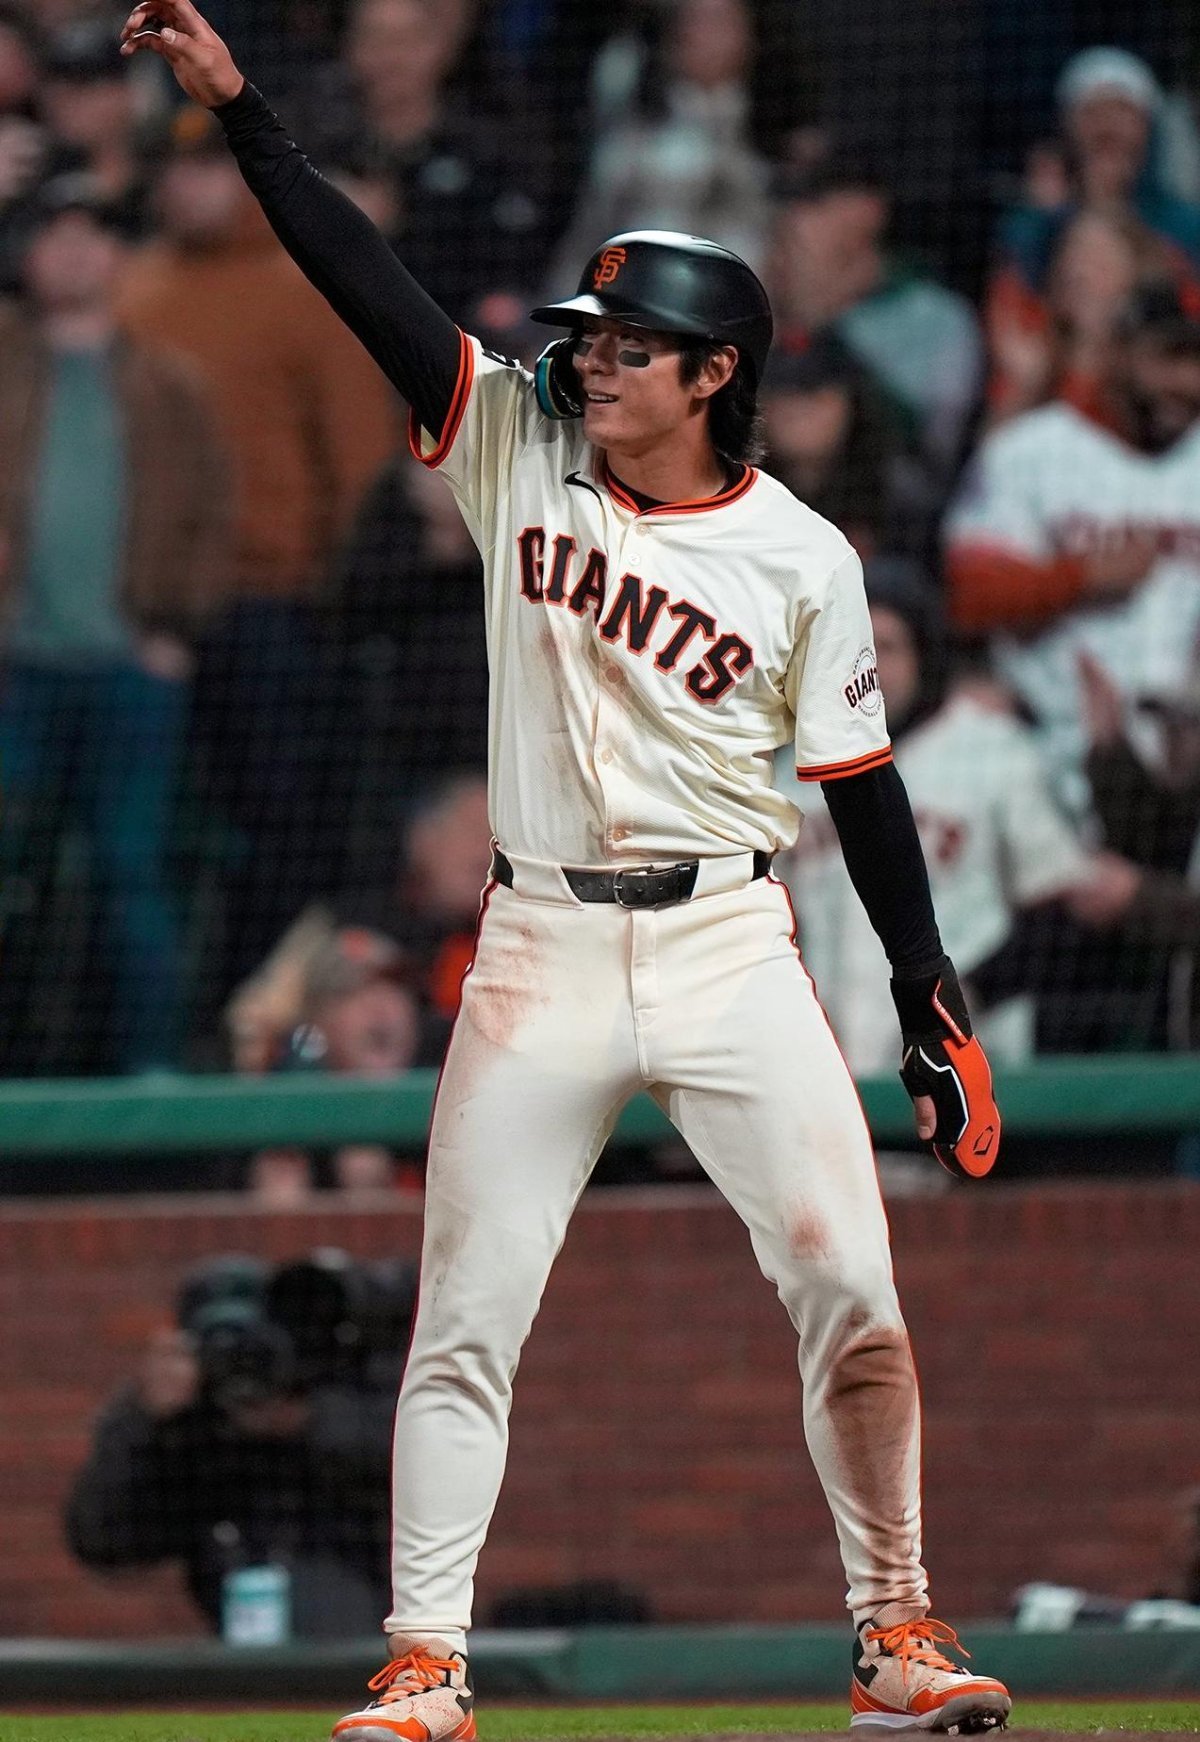 이정후(샌프란시스코)가 19일 미국프로야구 메이저리그(MLB) 안방경기에서 한국 선수 역대 세 번째로 MLB 데뷔 시즌 10경기 연속 안타를 날렸다. 사진 출처 샌프란시스코 구단 인스타그램